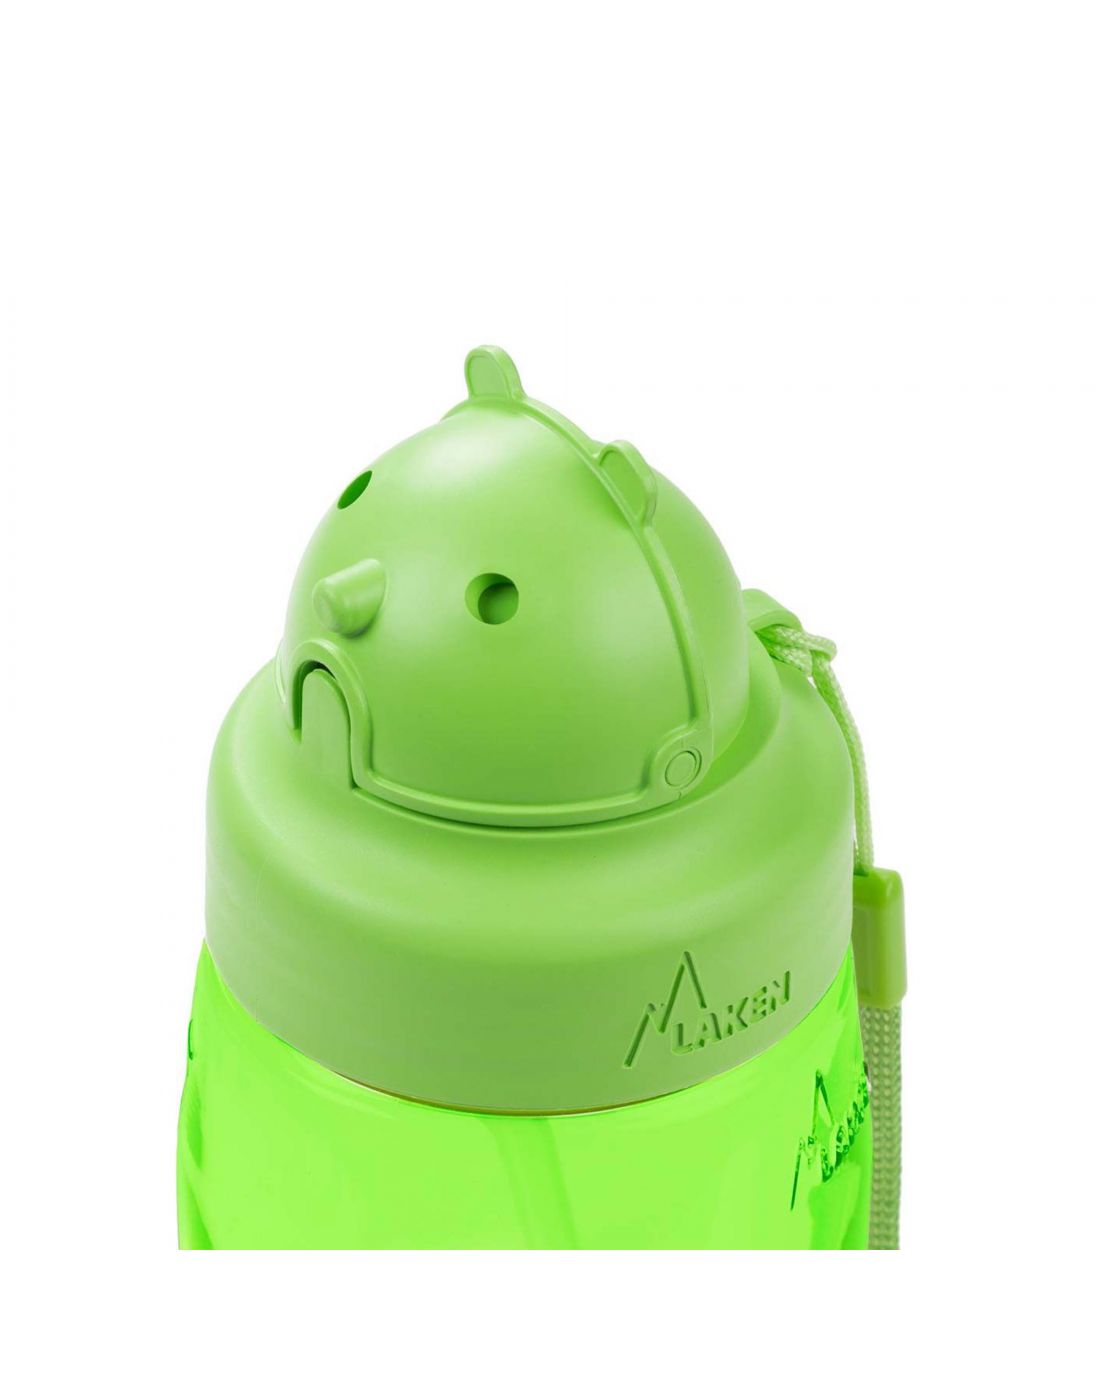 Παιδικό Μπουκάλι Με καλαμάκι Πράσινο Imaginarium